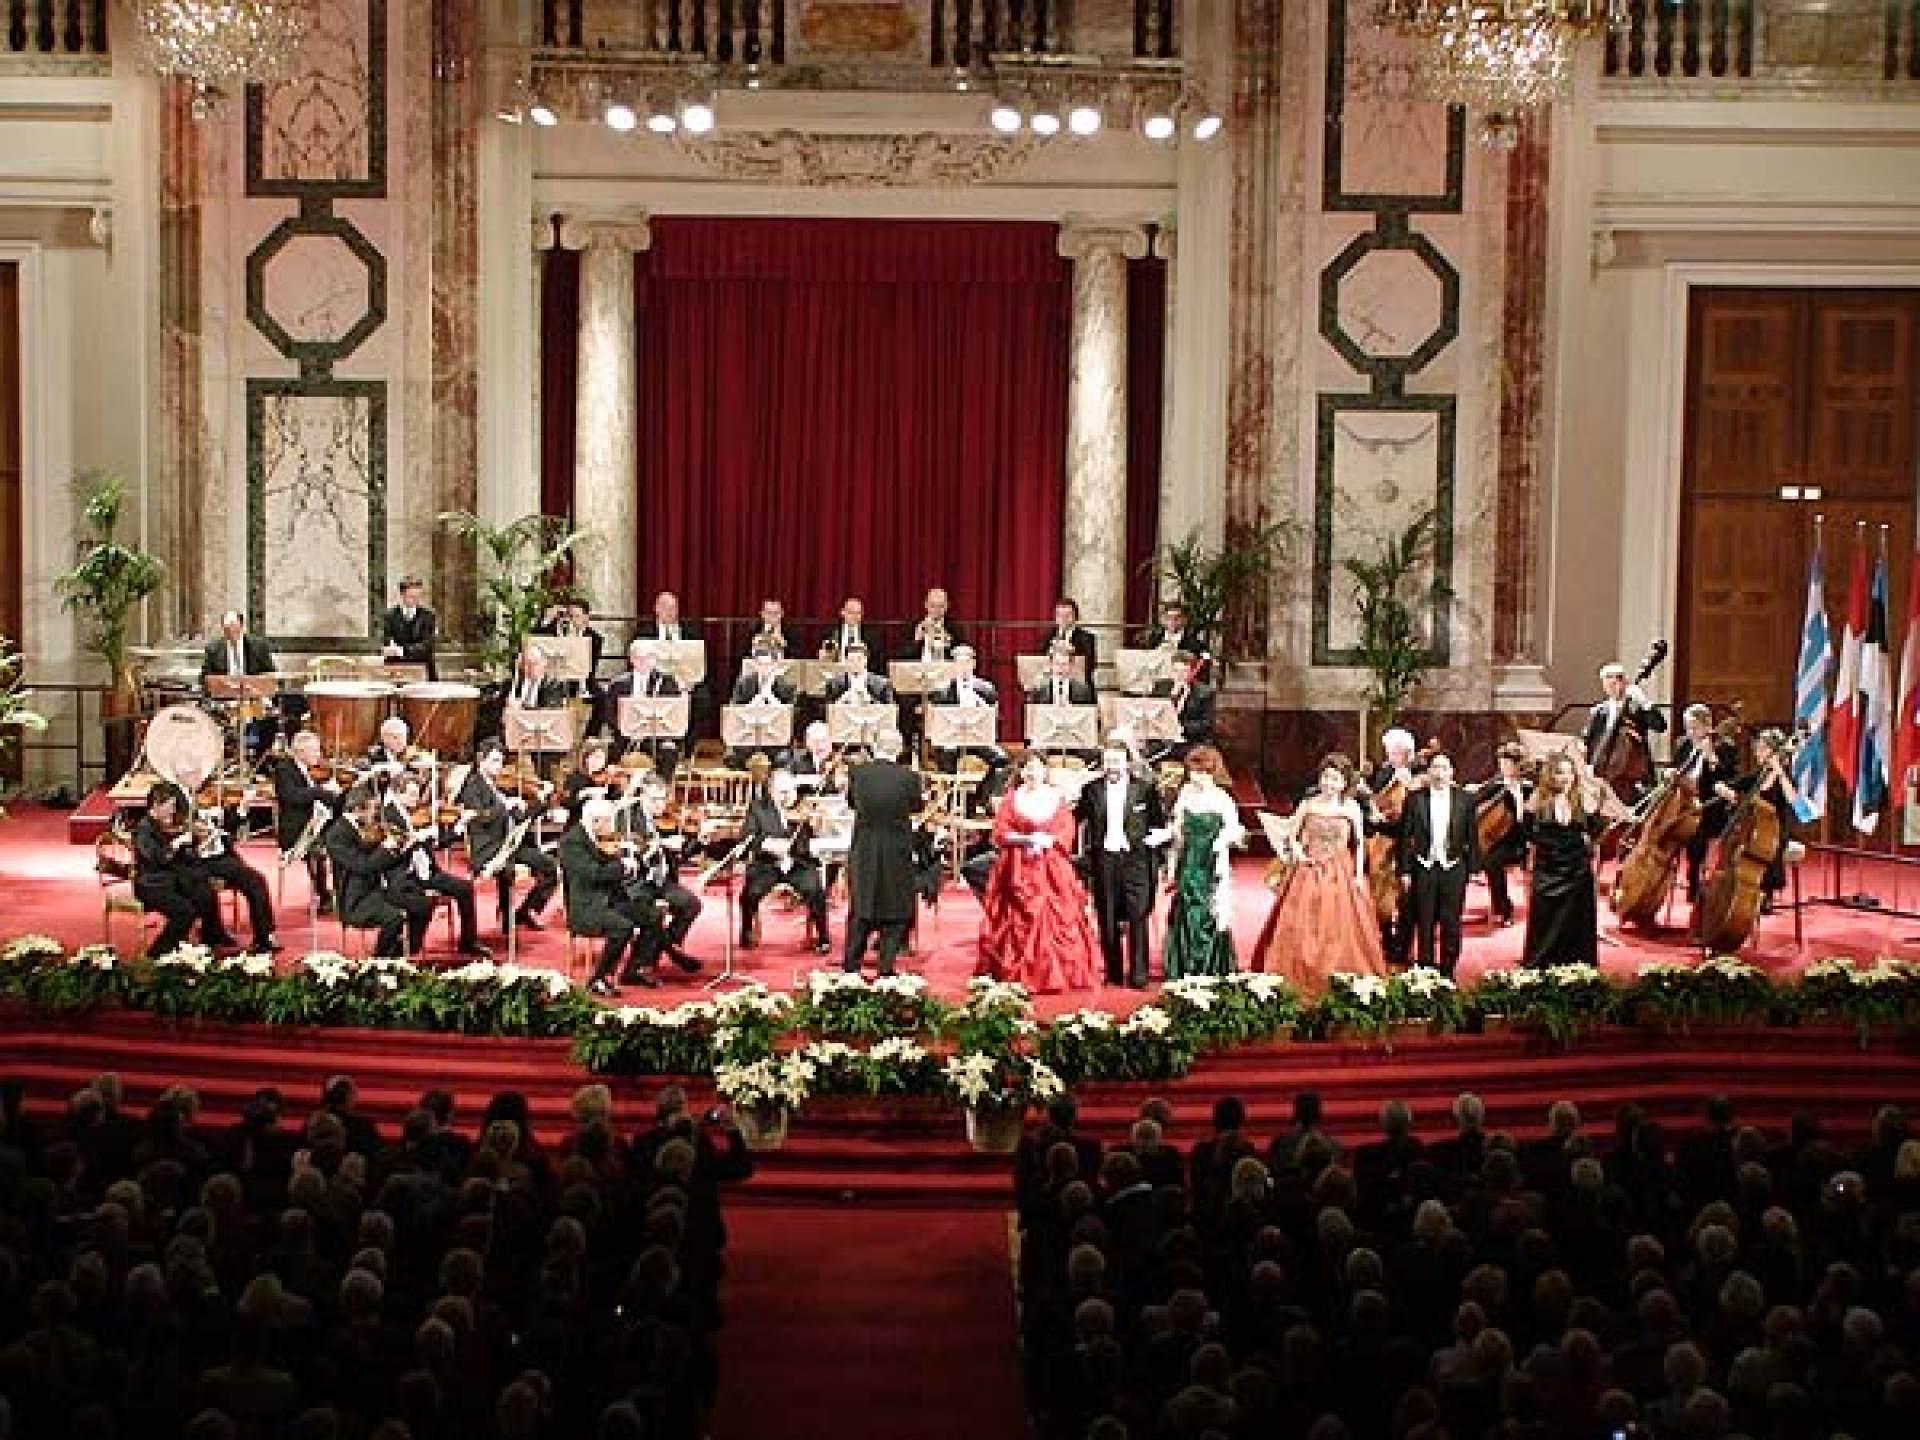 Vienna Hofburg Orchestra - Hofburg-Redoutensaal